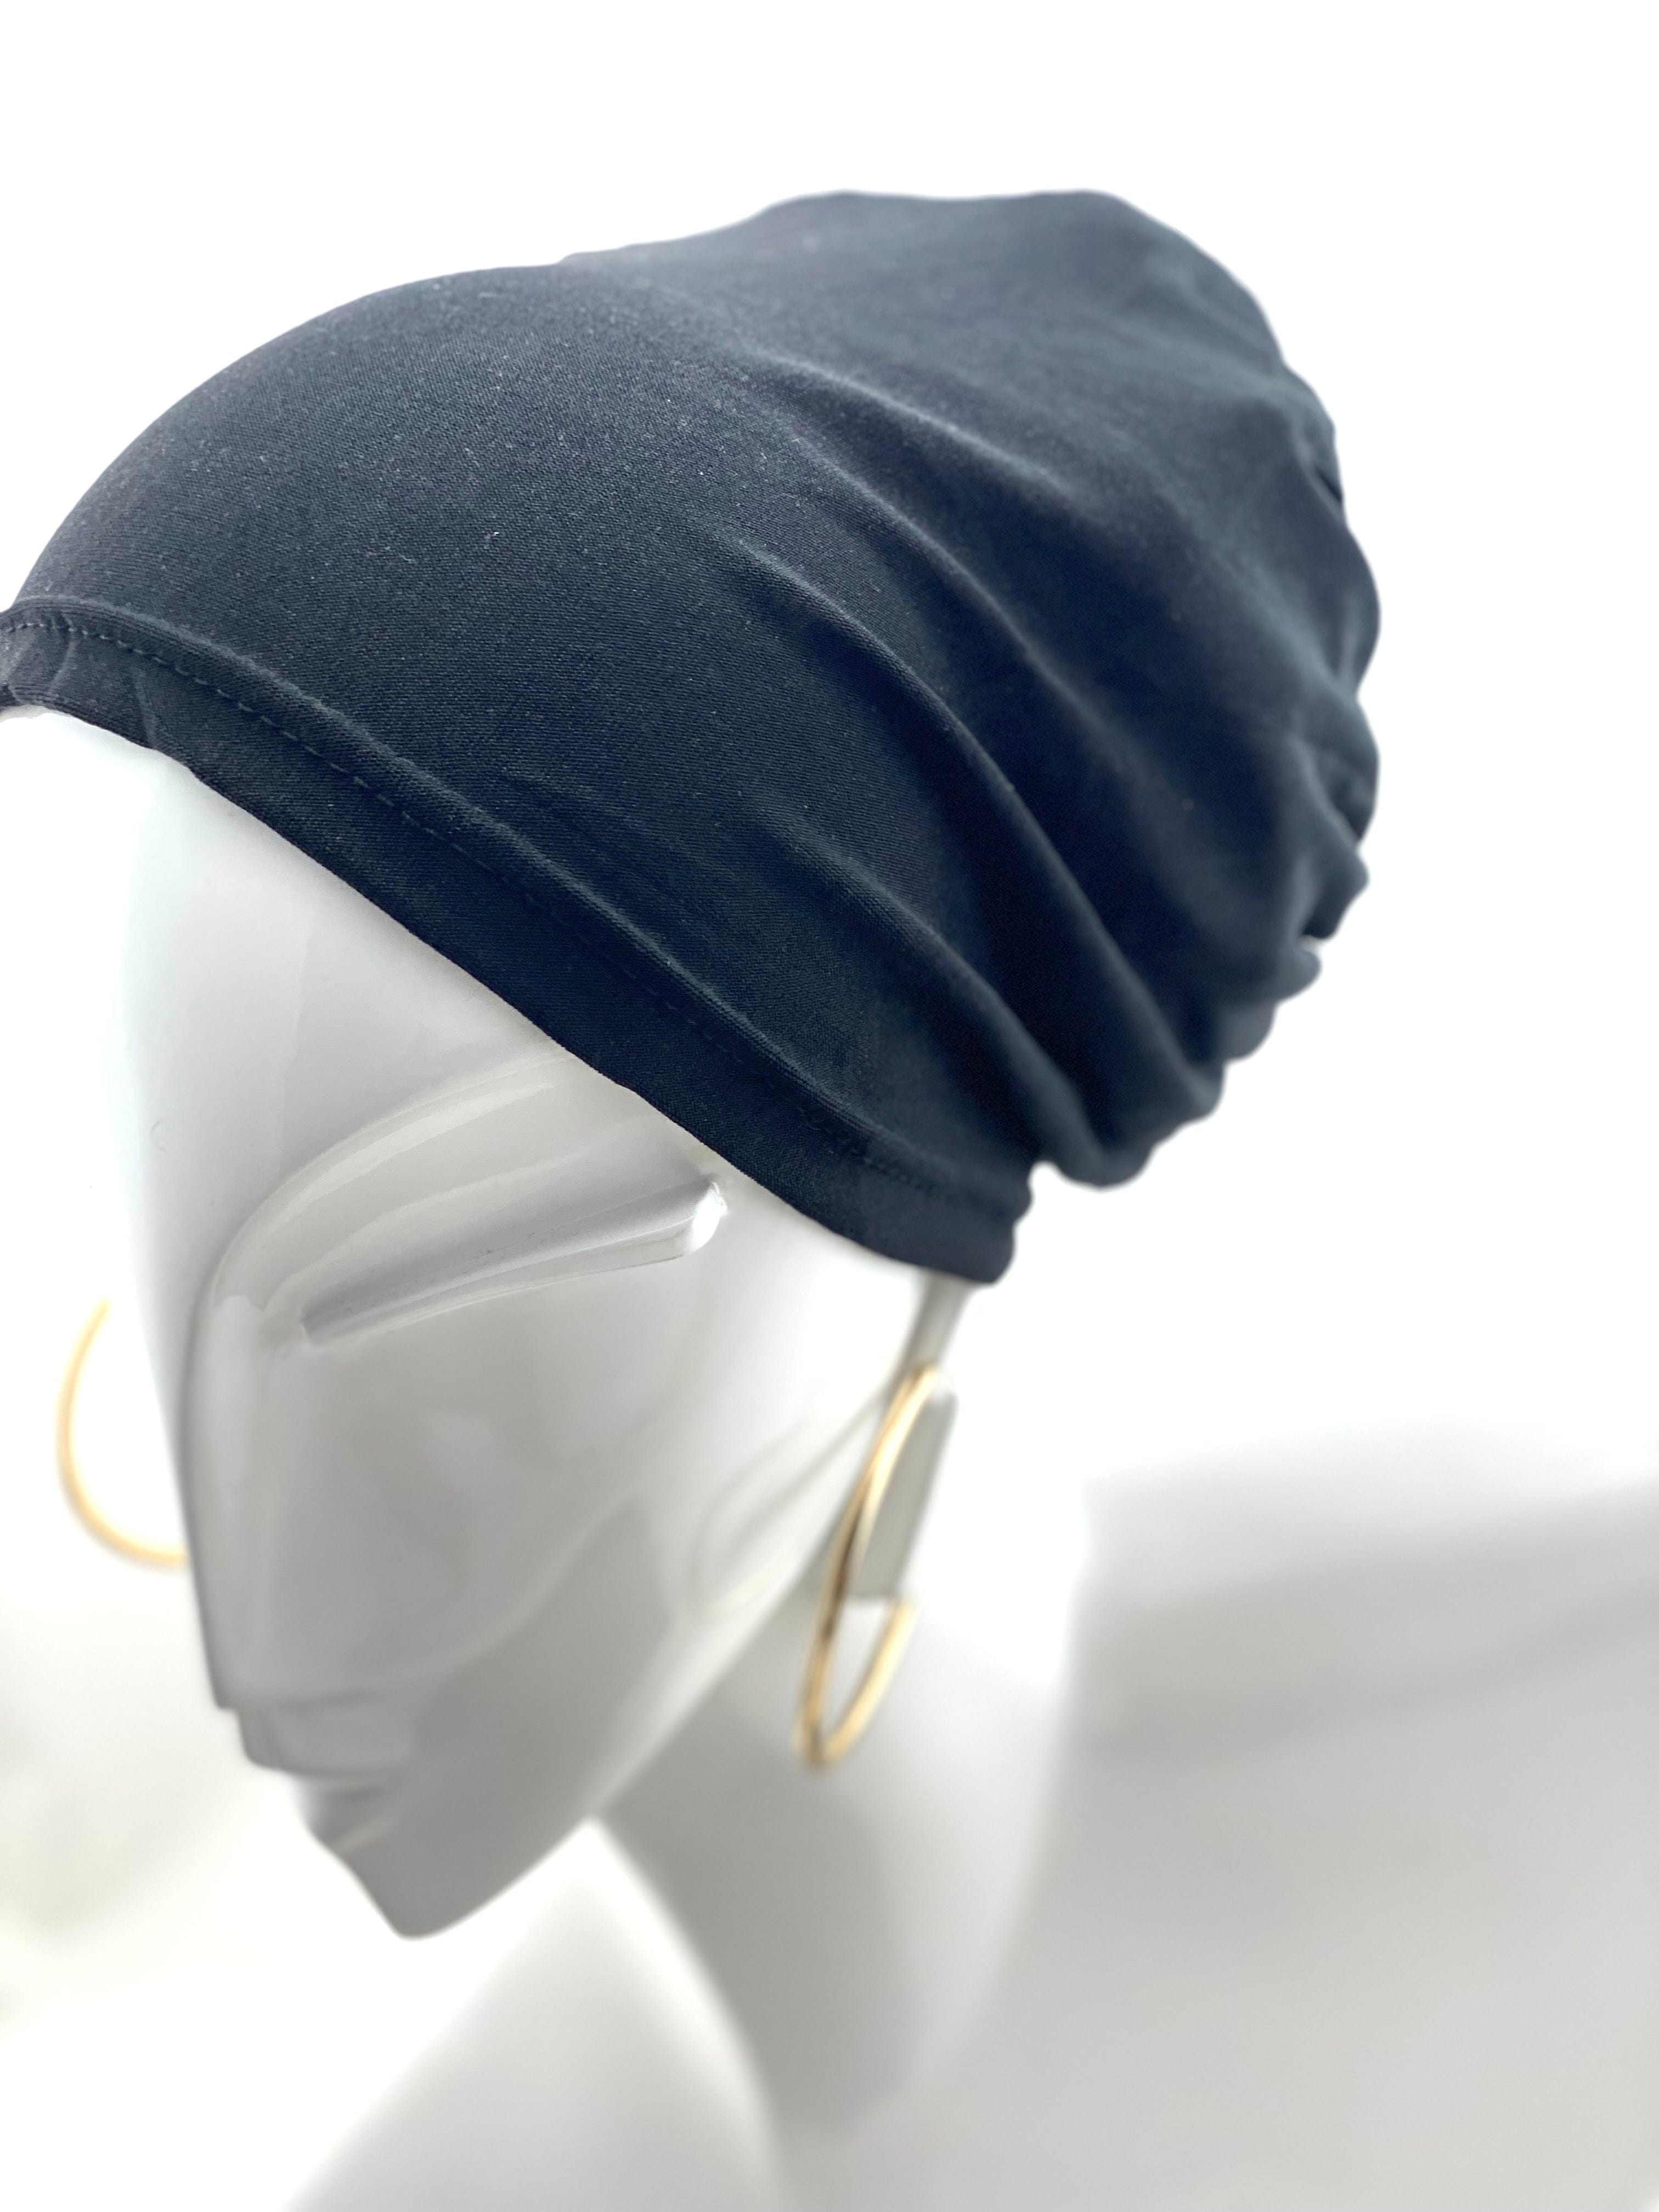 Hijabsandstuff Bonnet Bonnet Black Handmade Luxury Fashion Women Headwrap